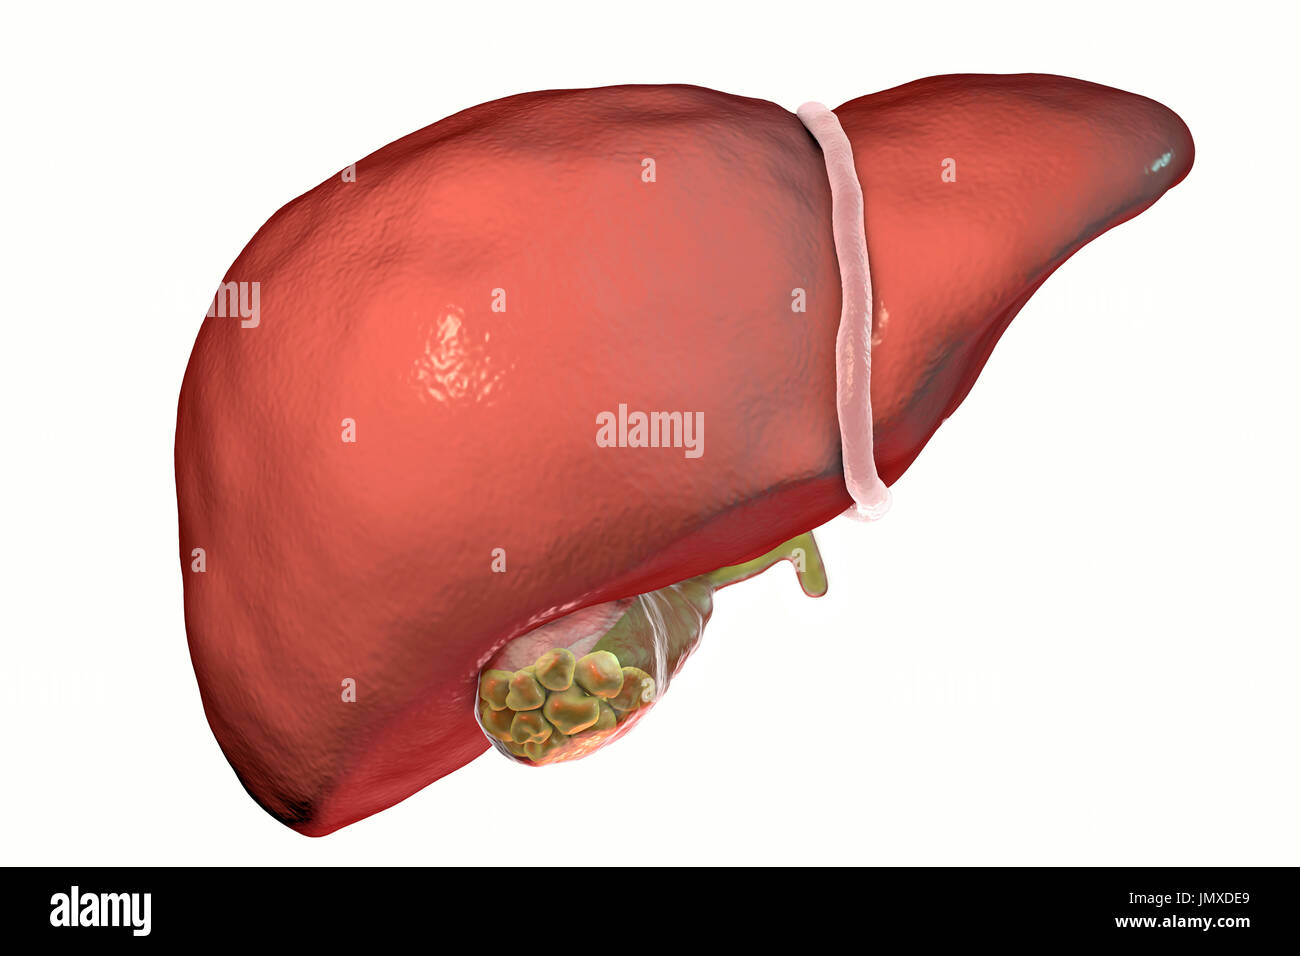 Los cálculos biliares. Ilustración que muestra el hígado y la vesícula  biliar con cálculos biliares. La vesícula biliar almacena bilis, un líquido  digestivo que es producida por el hígado (encima de la